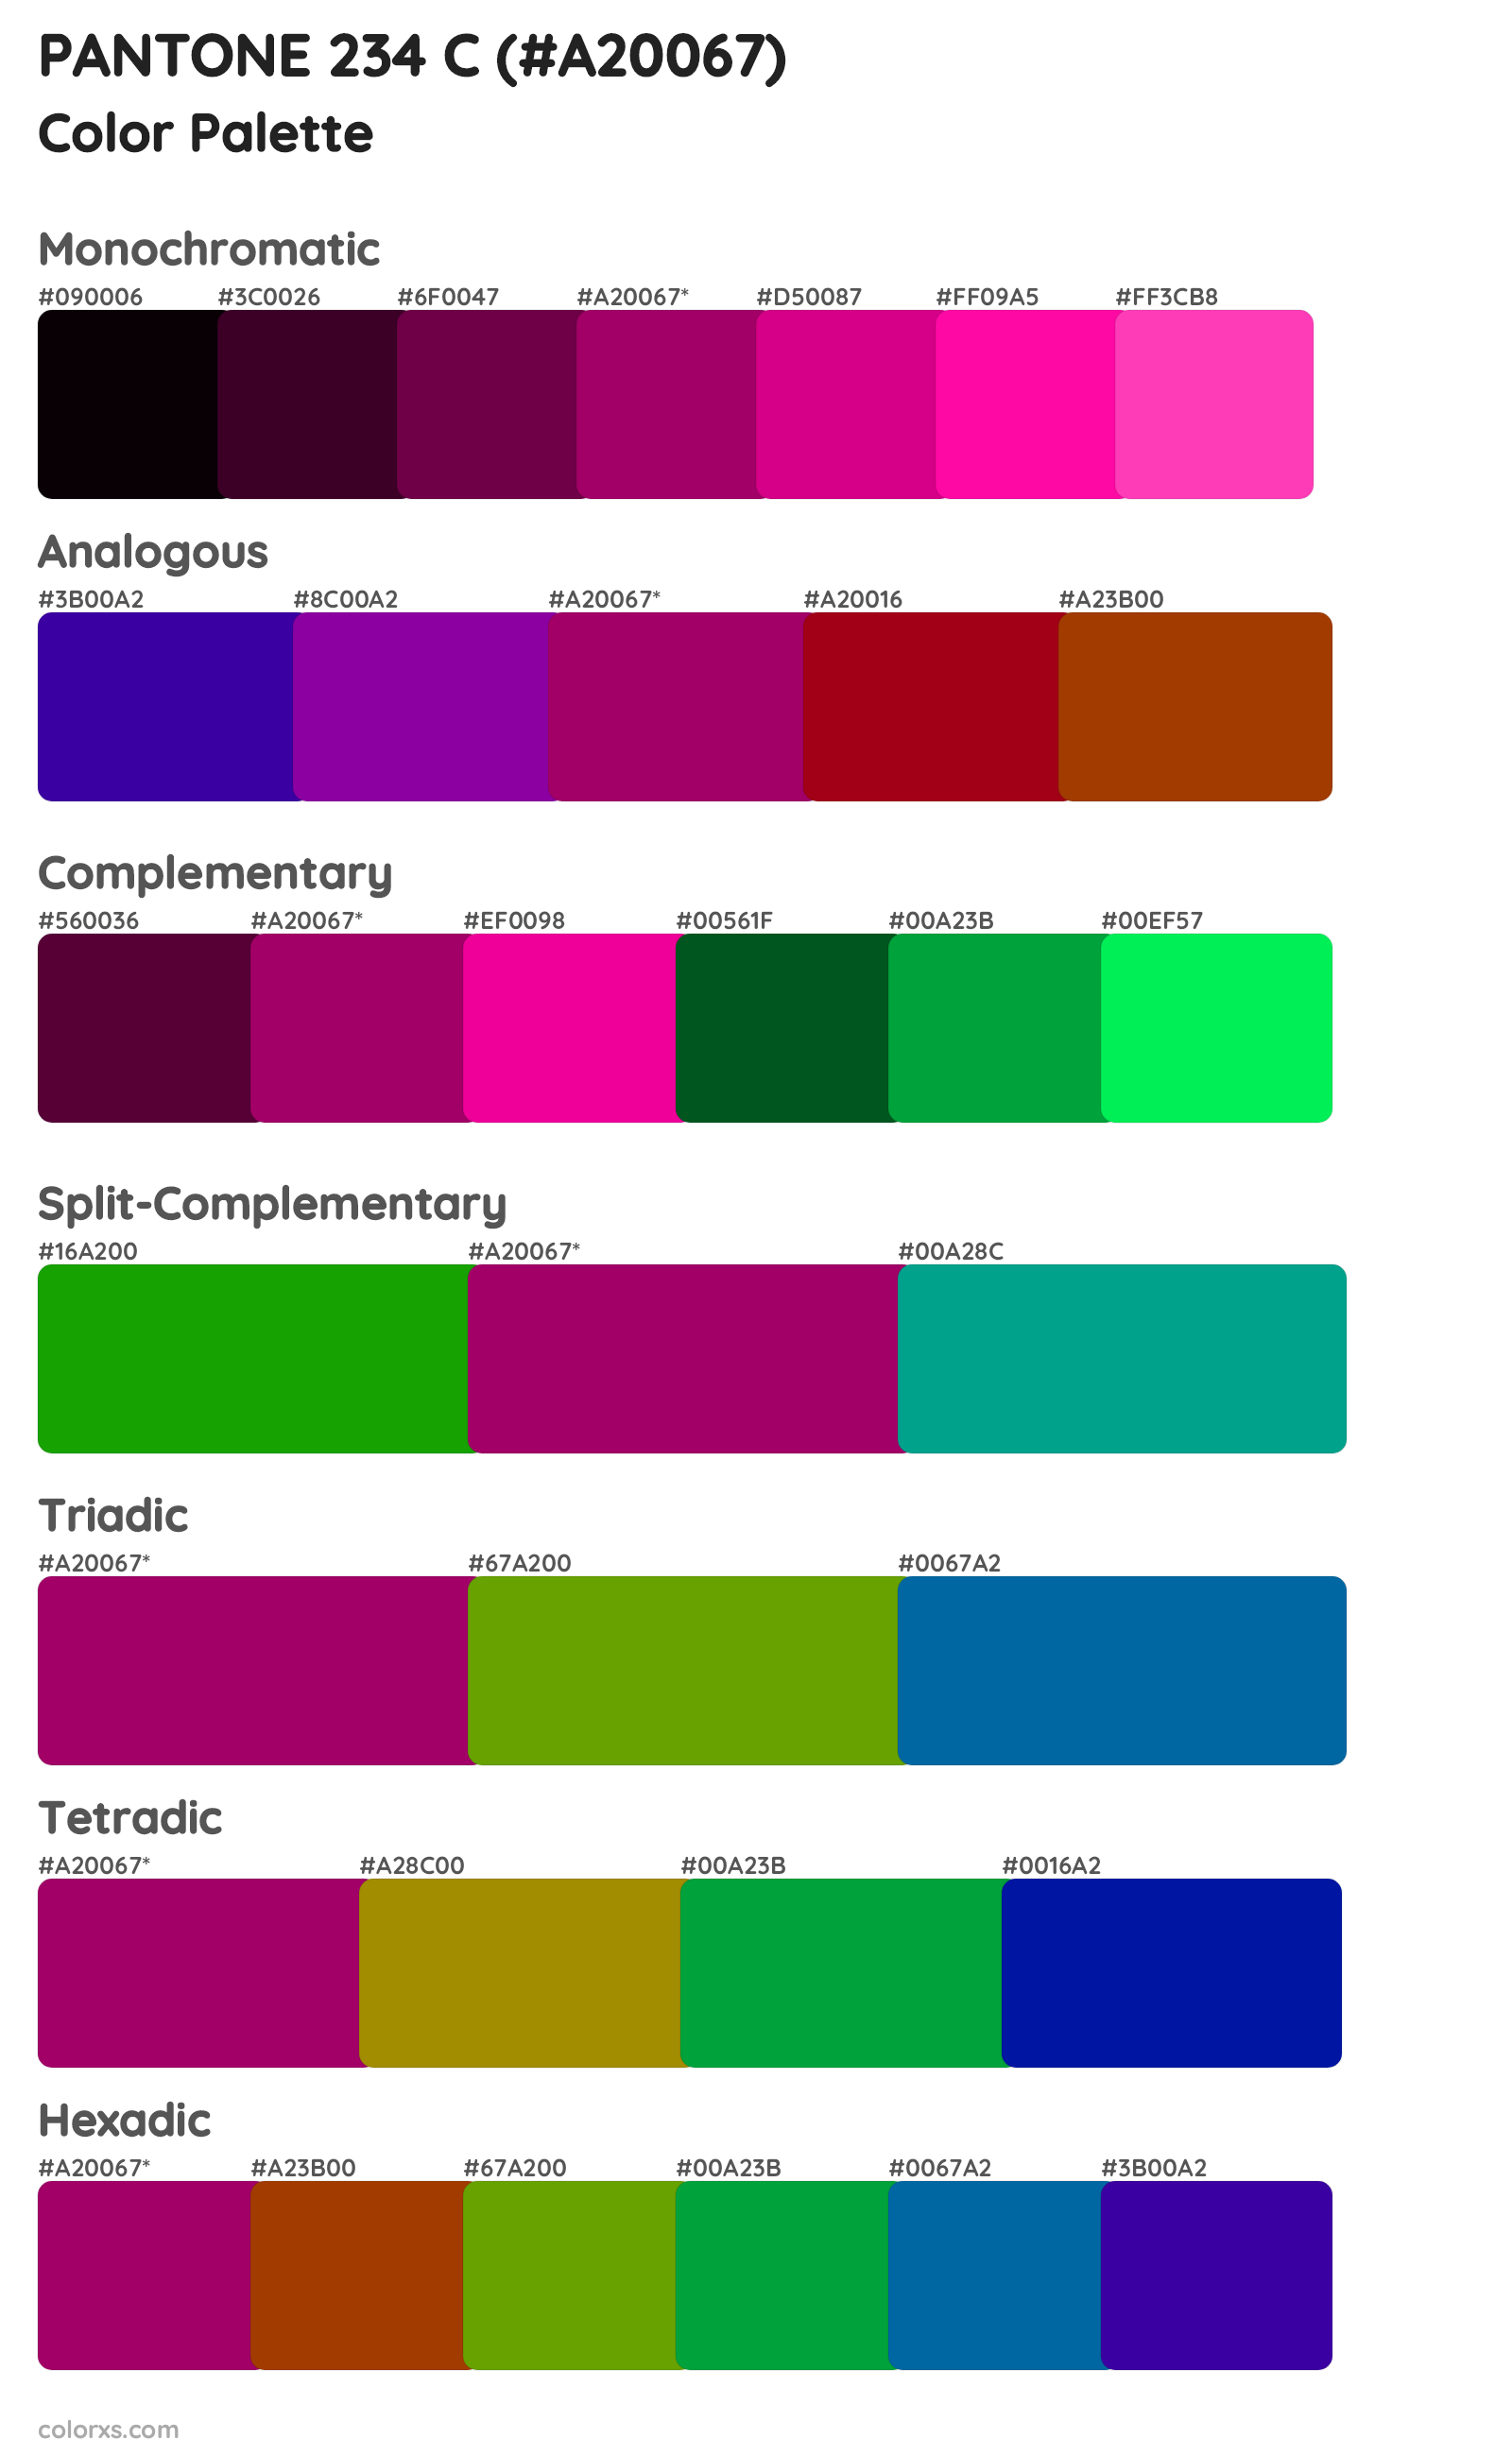 PANTONE 234 C Color Scheme Palettes